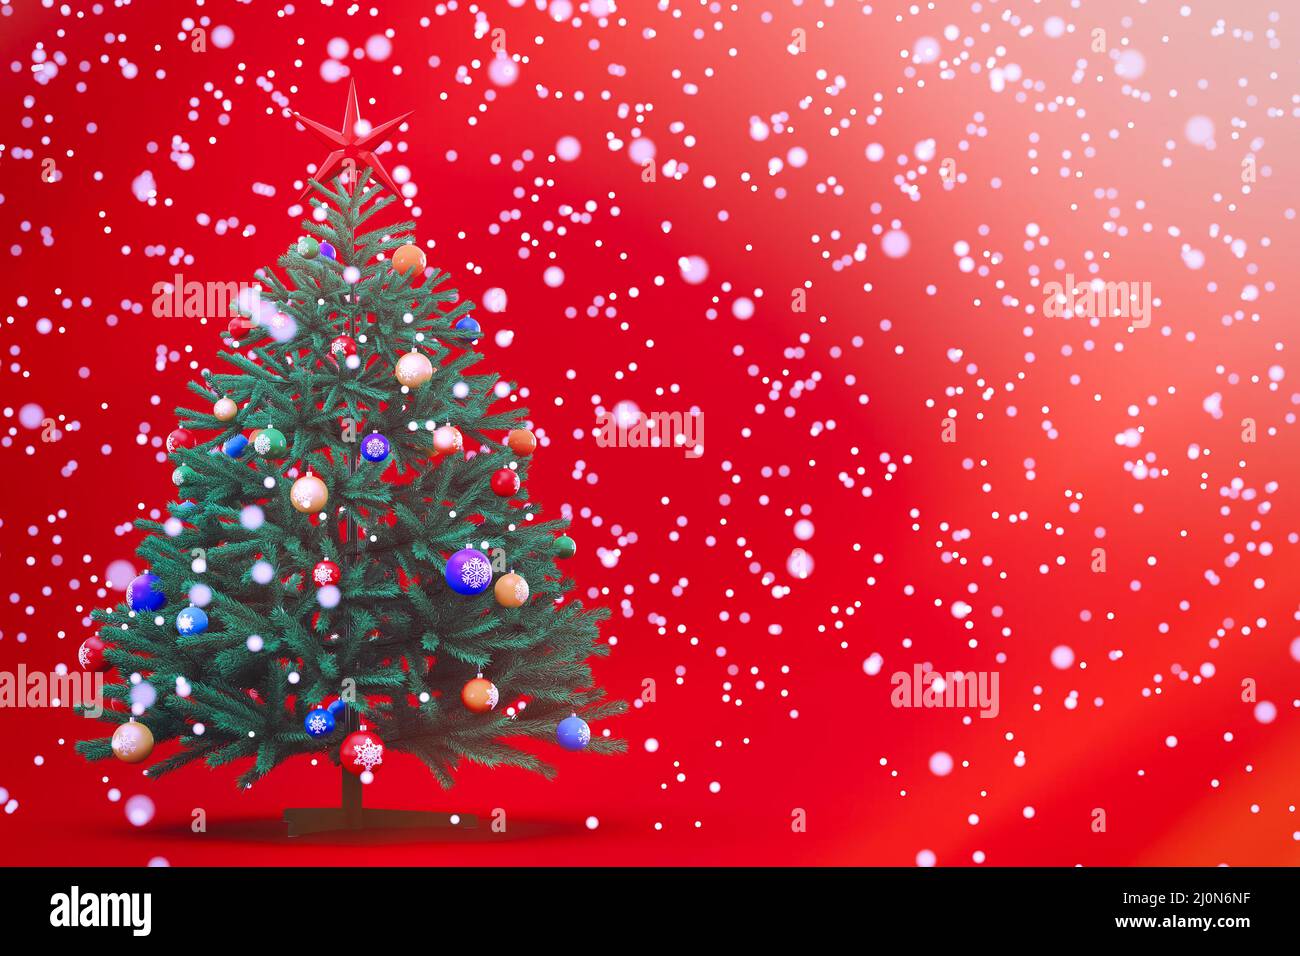 Sapin vert de Noël avec jouets ronds, balles. Arrière-plan rouge. Un grand nombre de bokeh ronds. Un conte de fées. Carte du nouvel an. Copier Banque D'Images